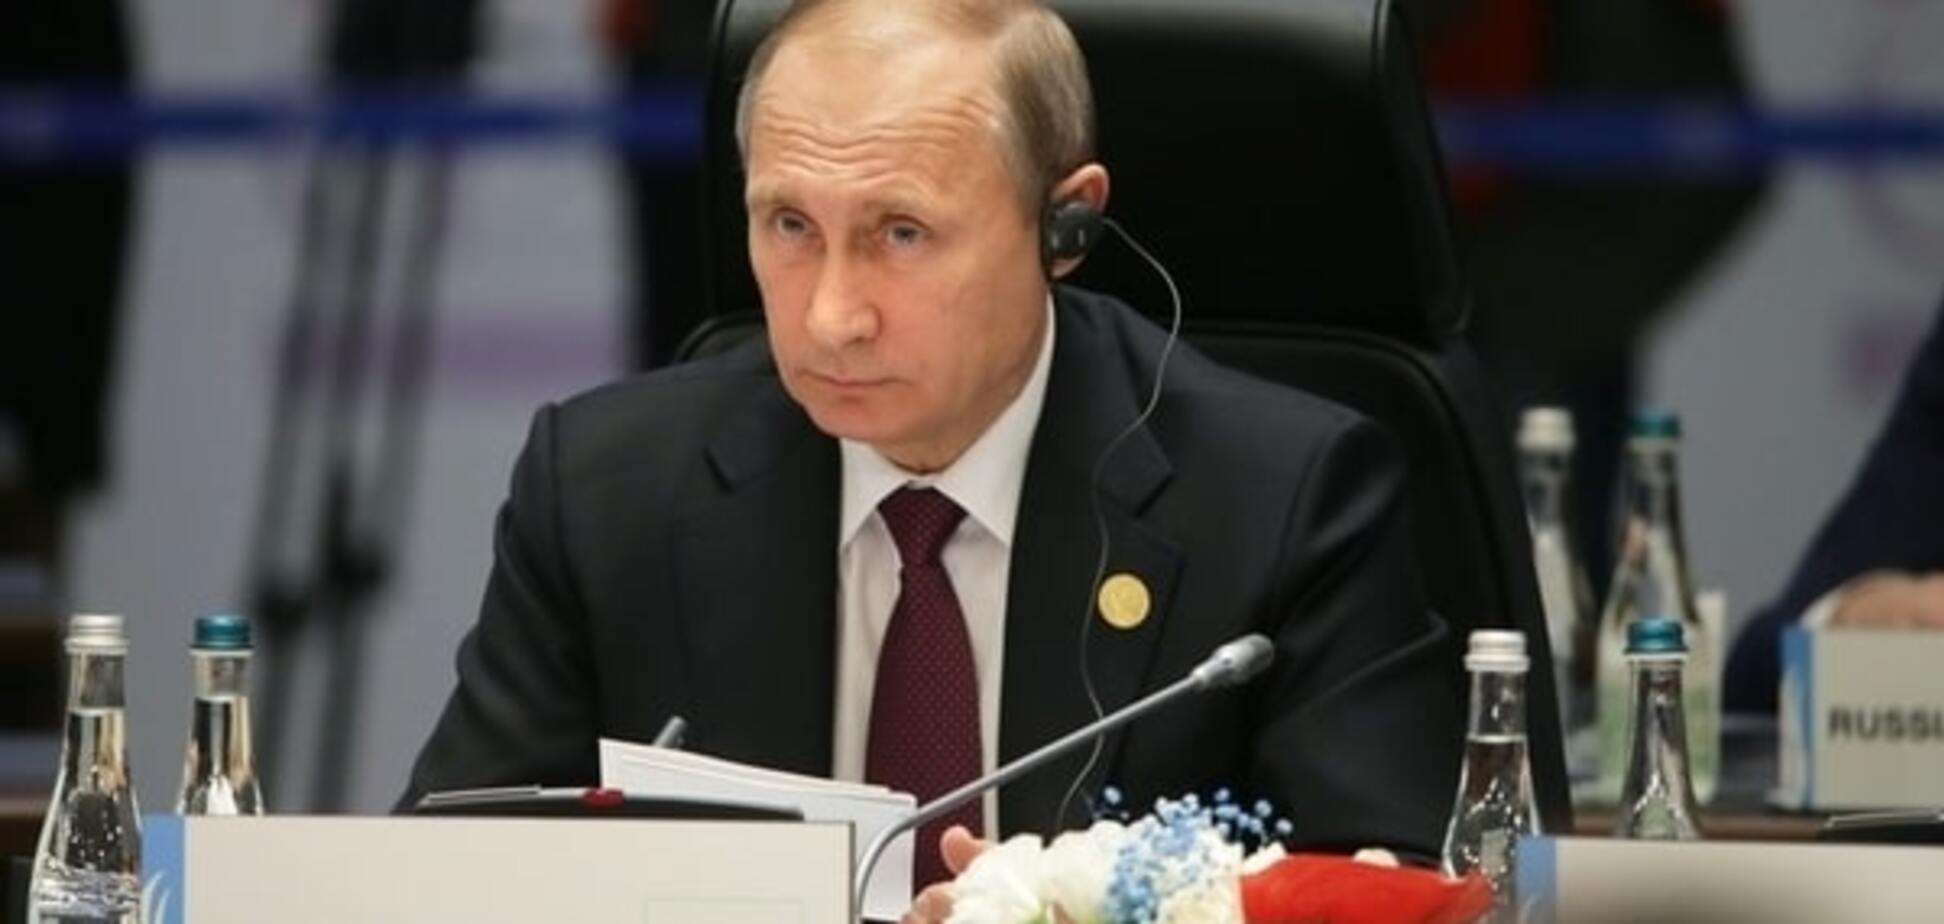 Боровой: Путин обречен, и что бы он ни делал - впереди только Гаага